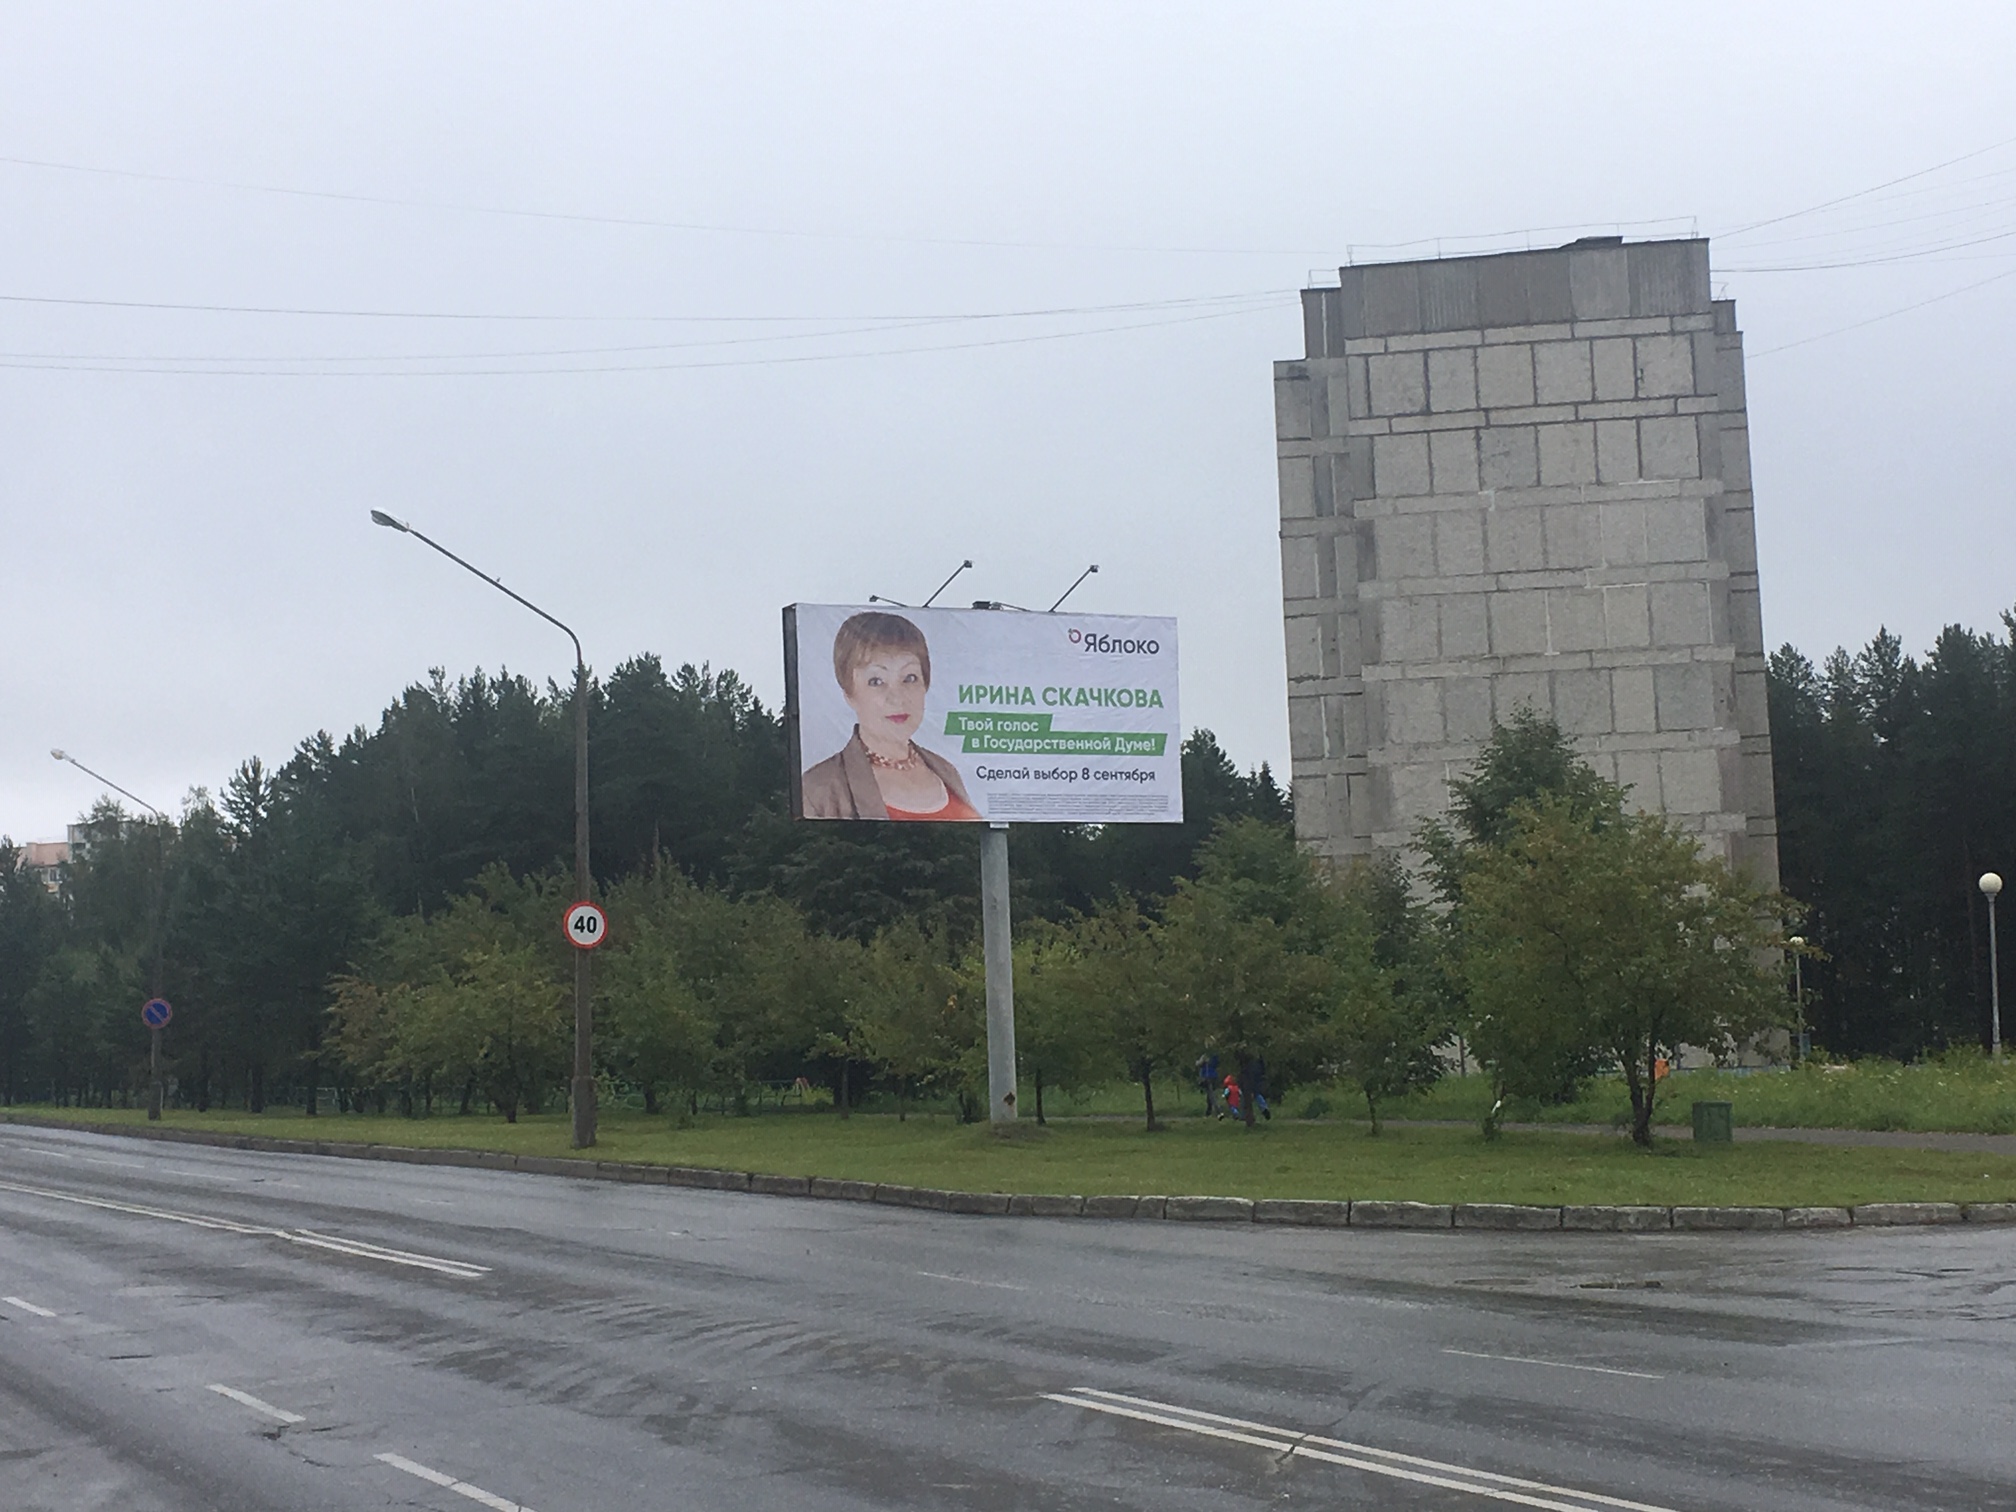 Аренда рекламных конструкций в городе Лесной